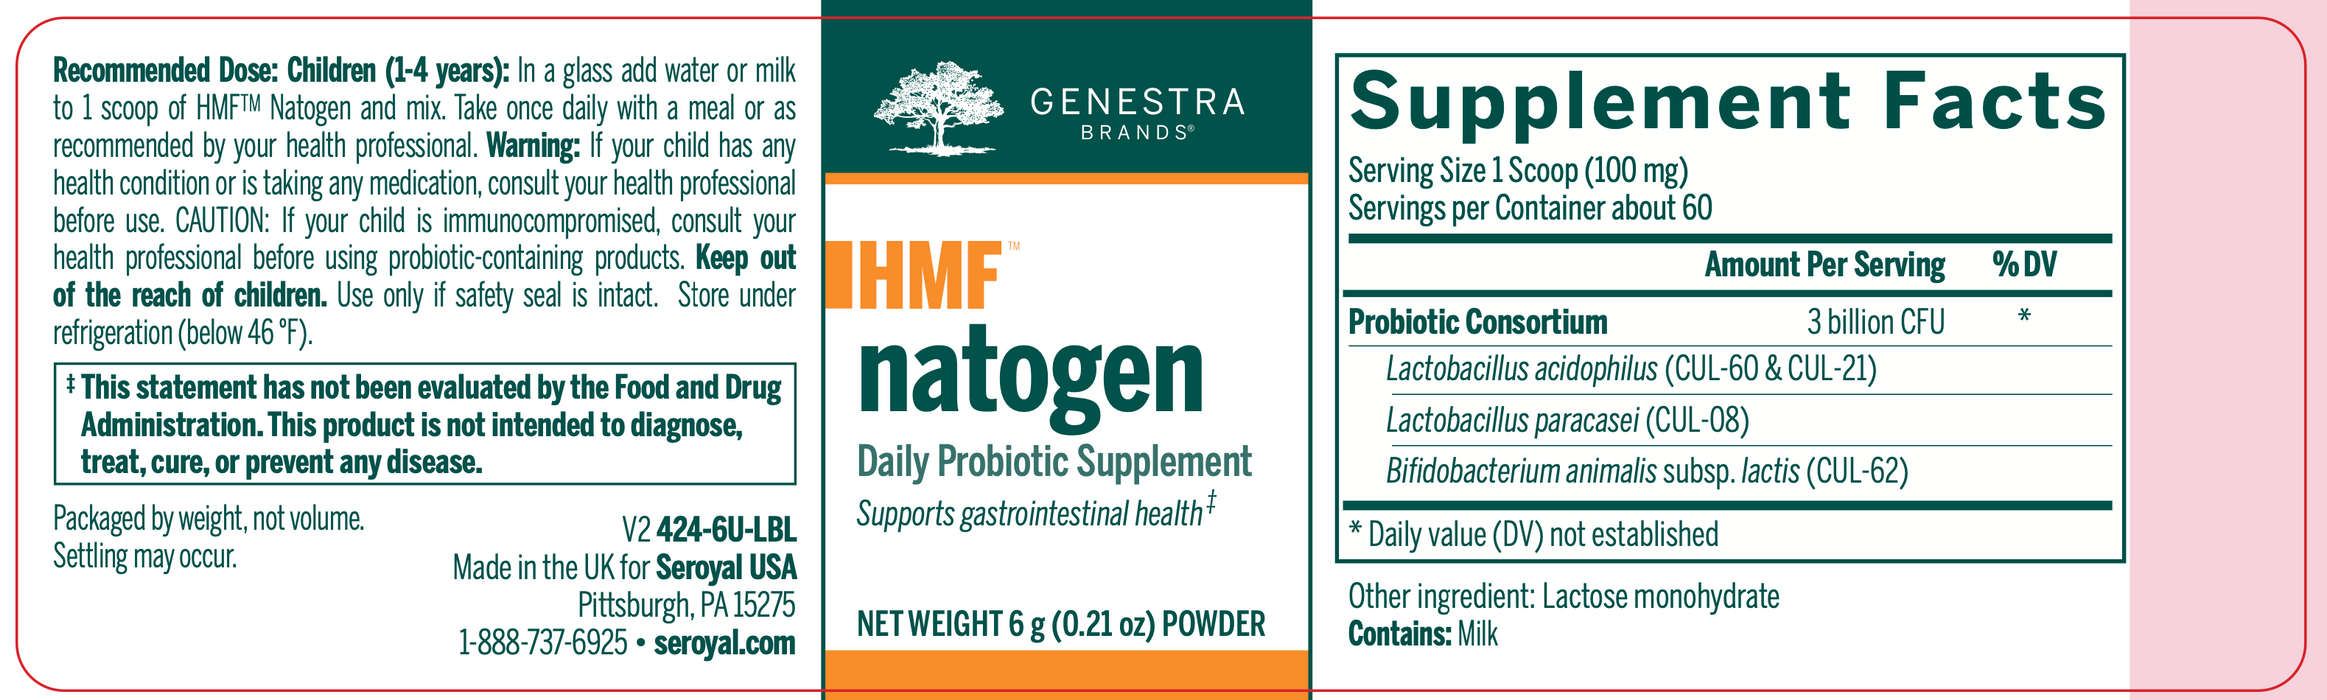 Genestra - HMF Natogen (6 grams) - 